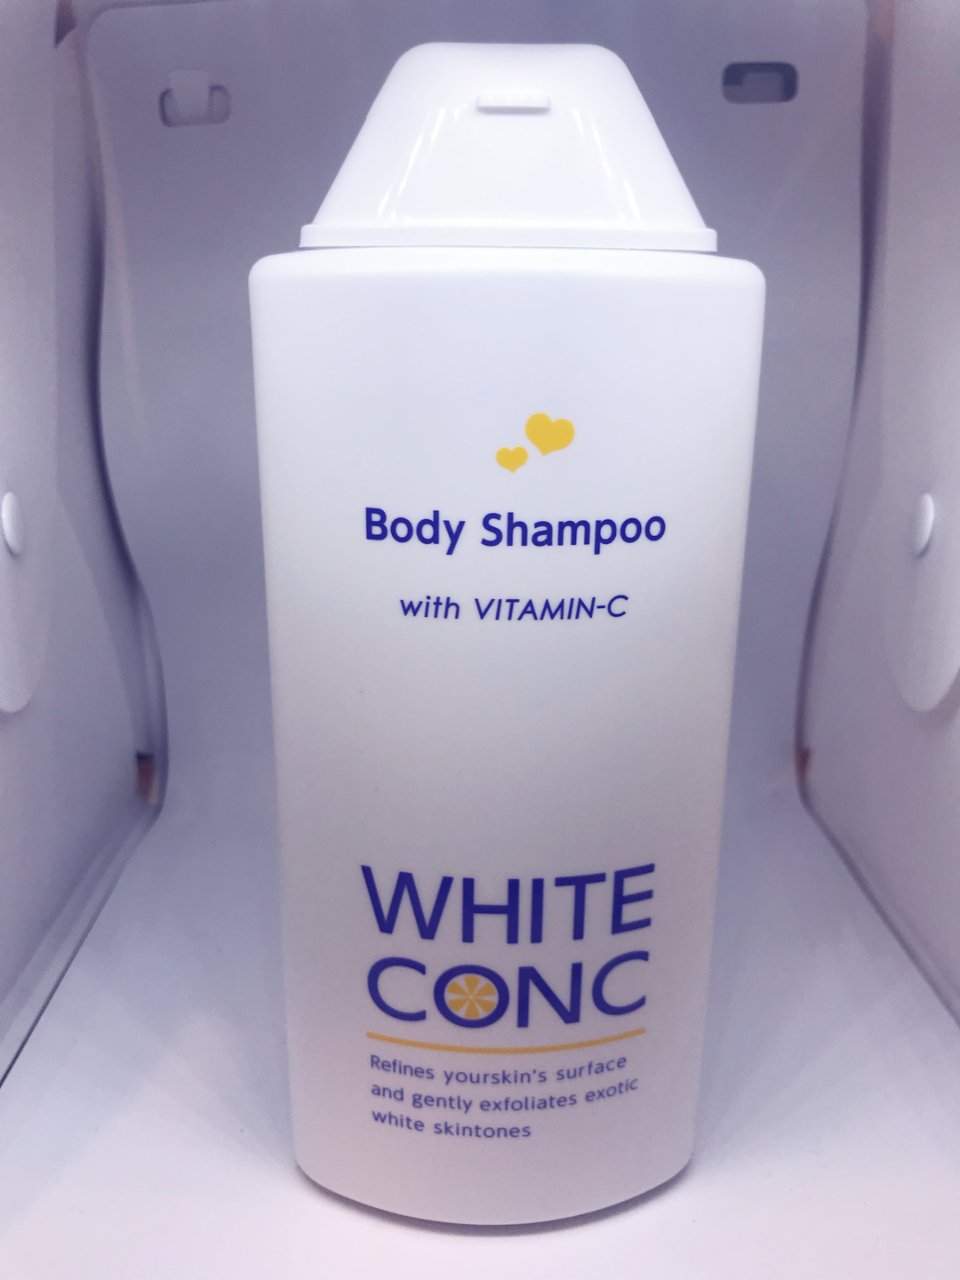 White conc,Body Shampoo,沐浴露,美白,$16